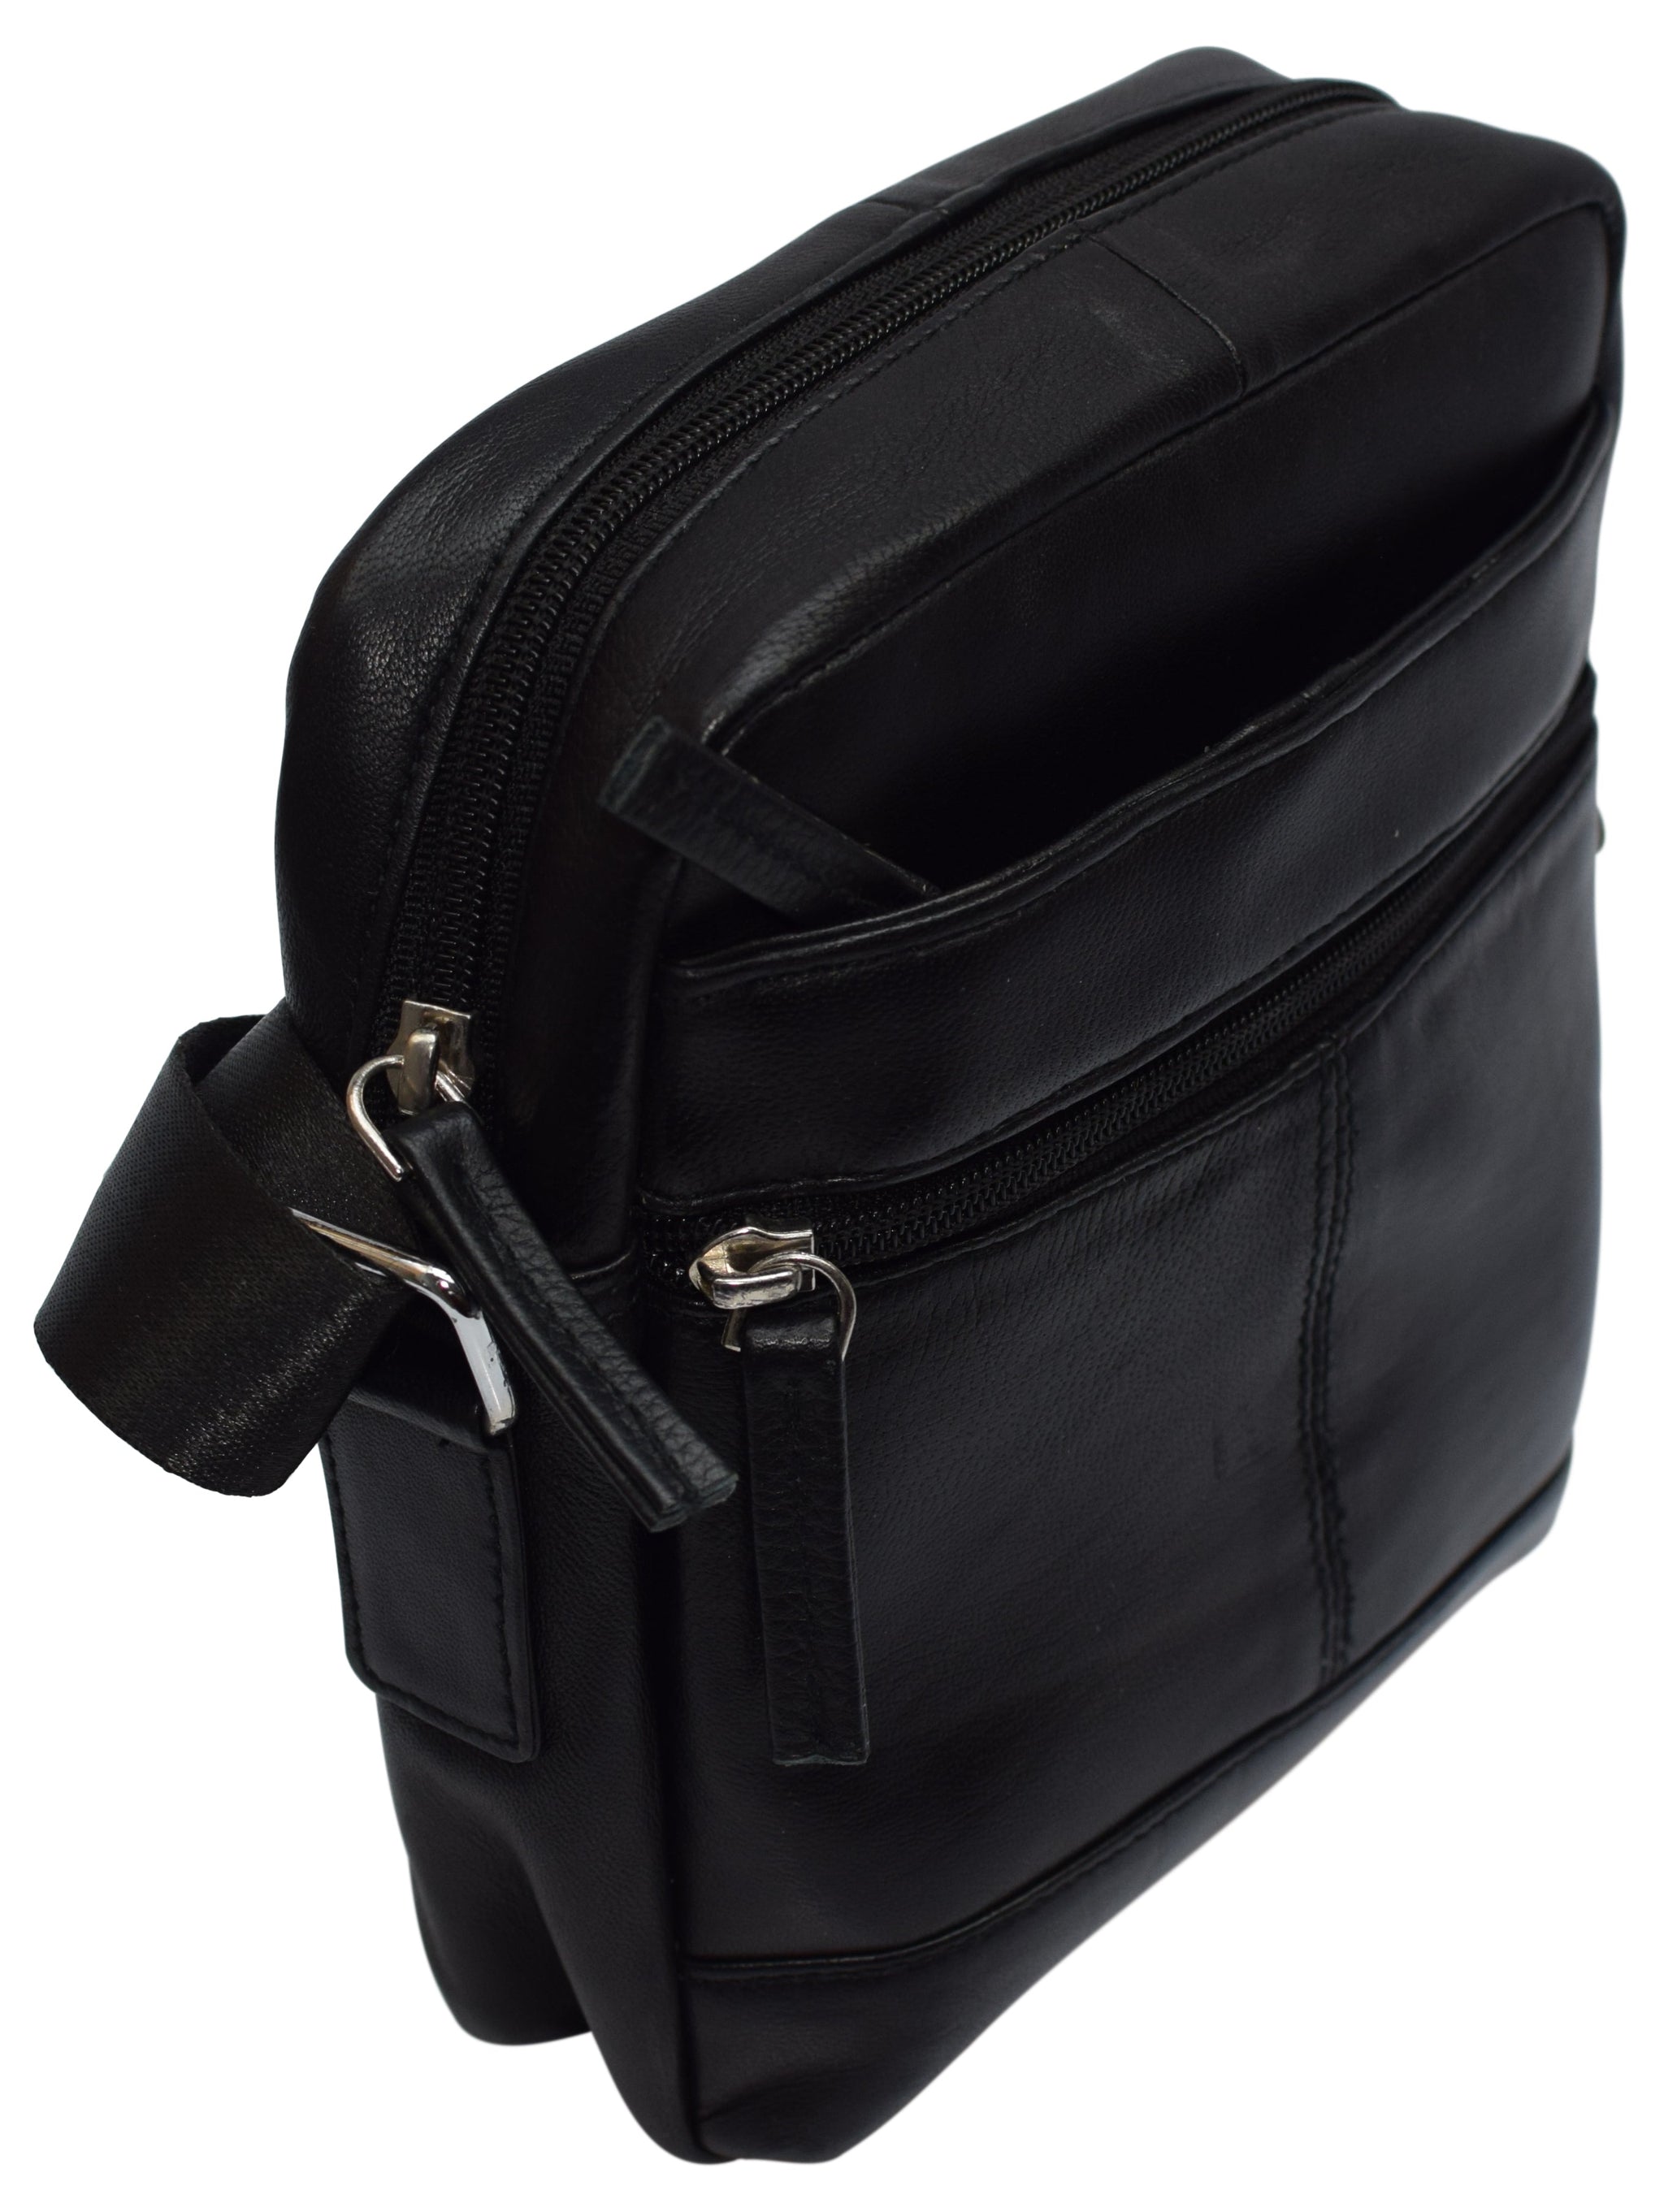 Men's purses and shoulder bags